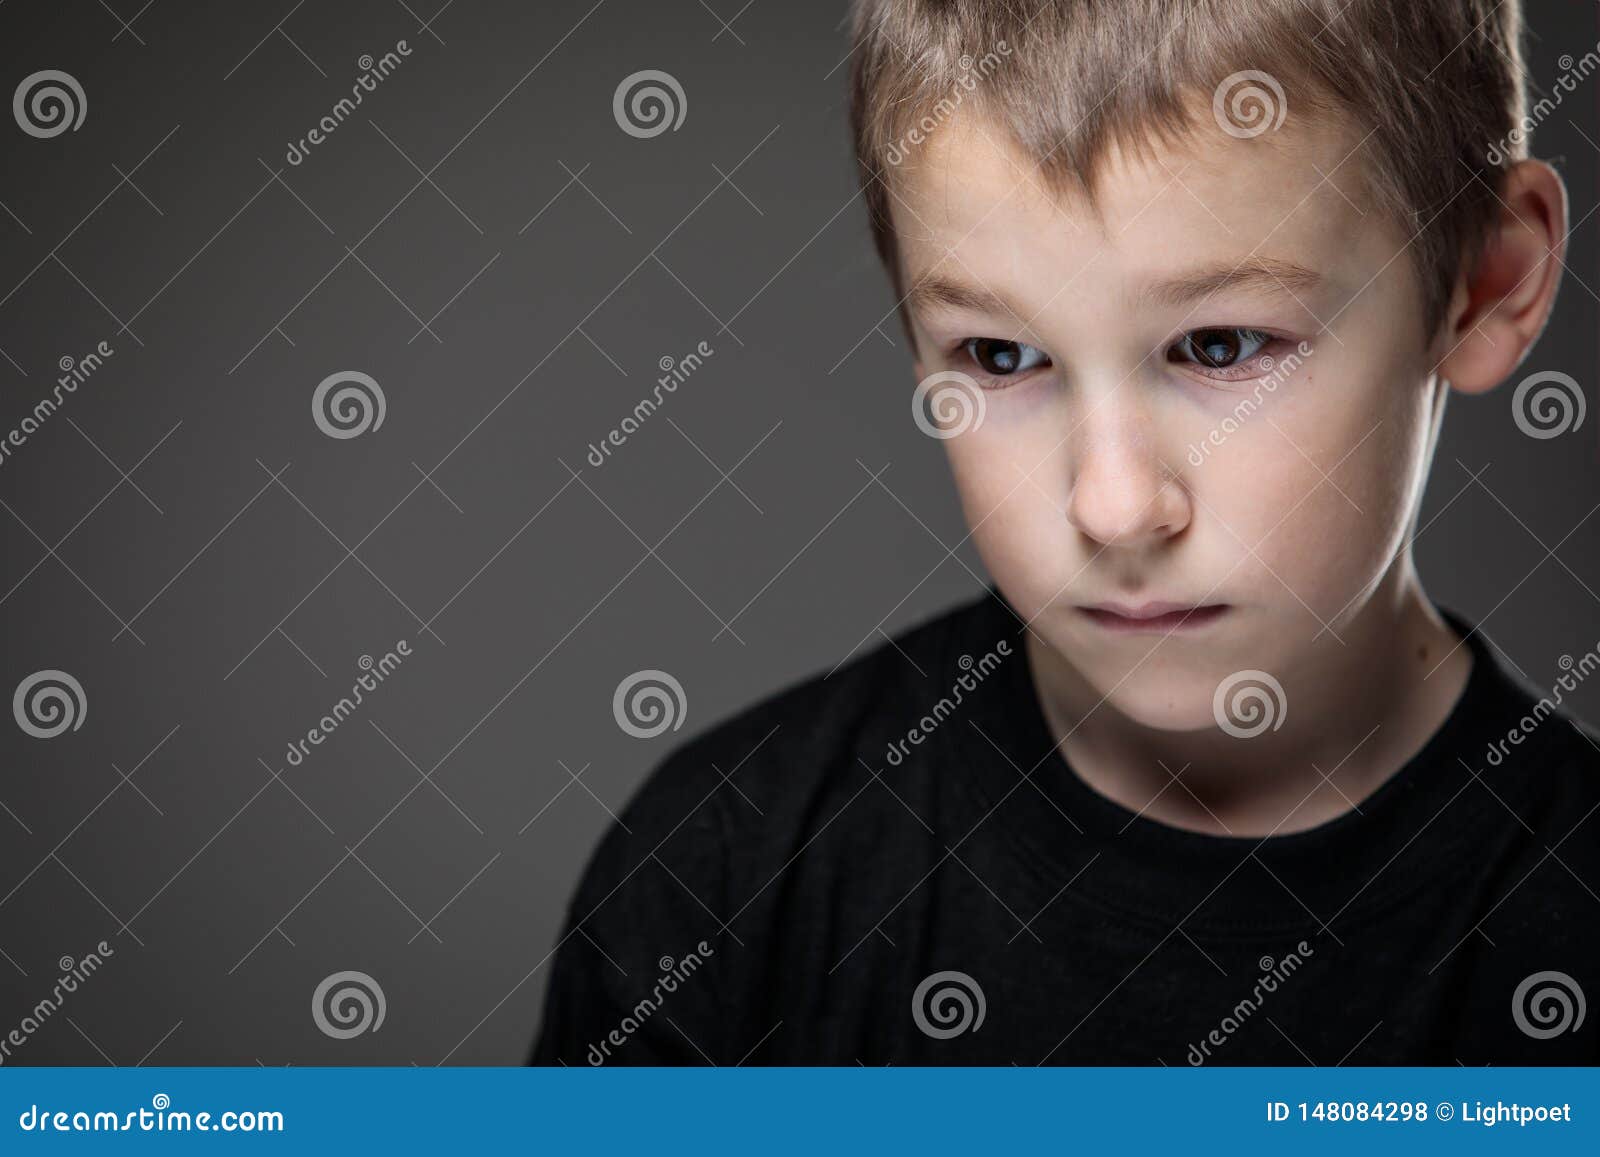 Grief-stricken Little Boy - Feeling Intense Sorrow Stock Photo - Image ...